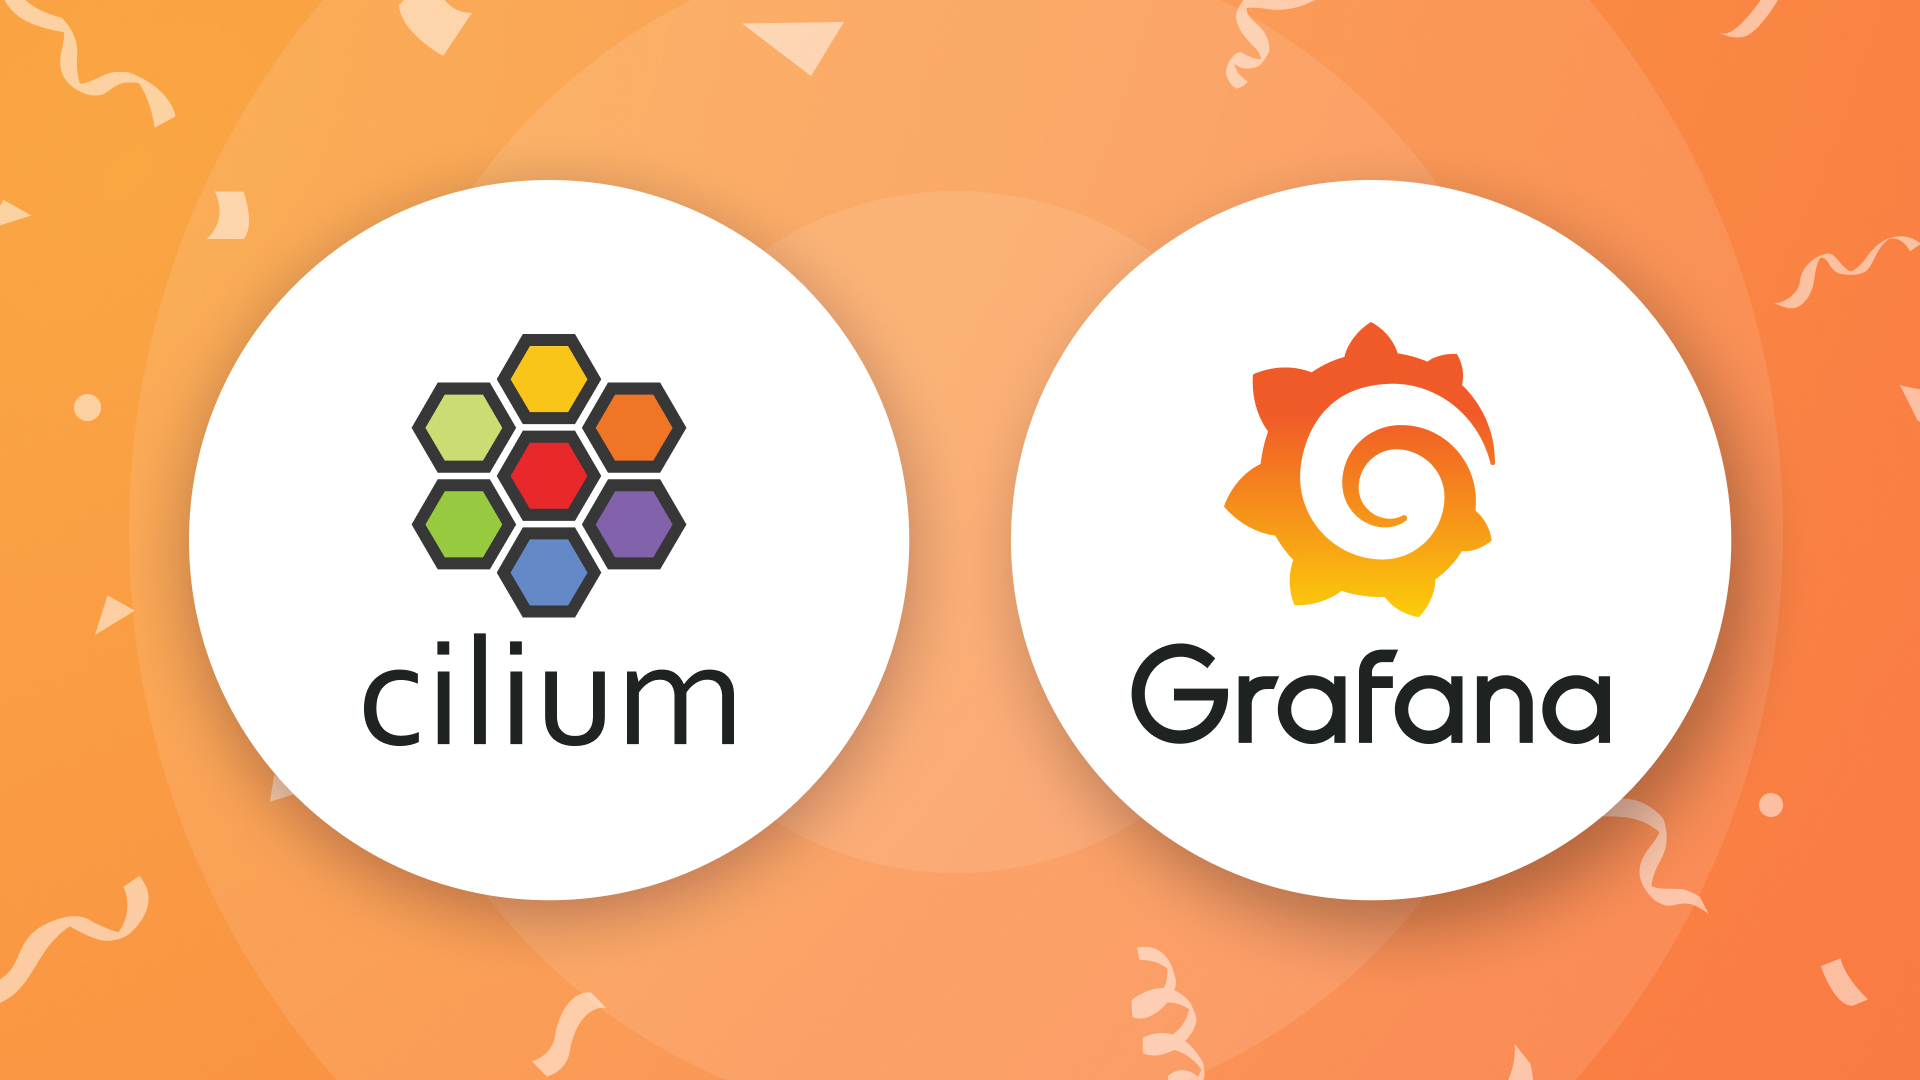 Cilium and Grafana logos